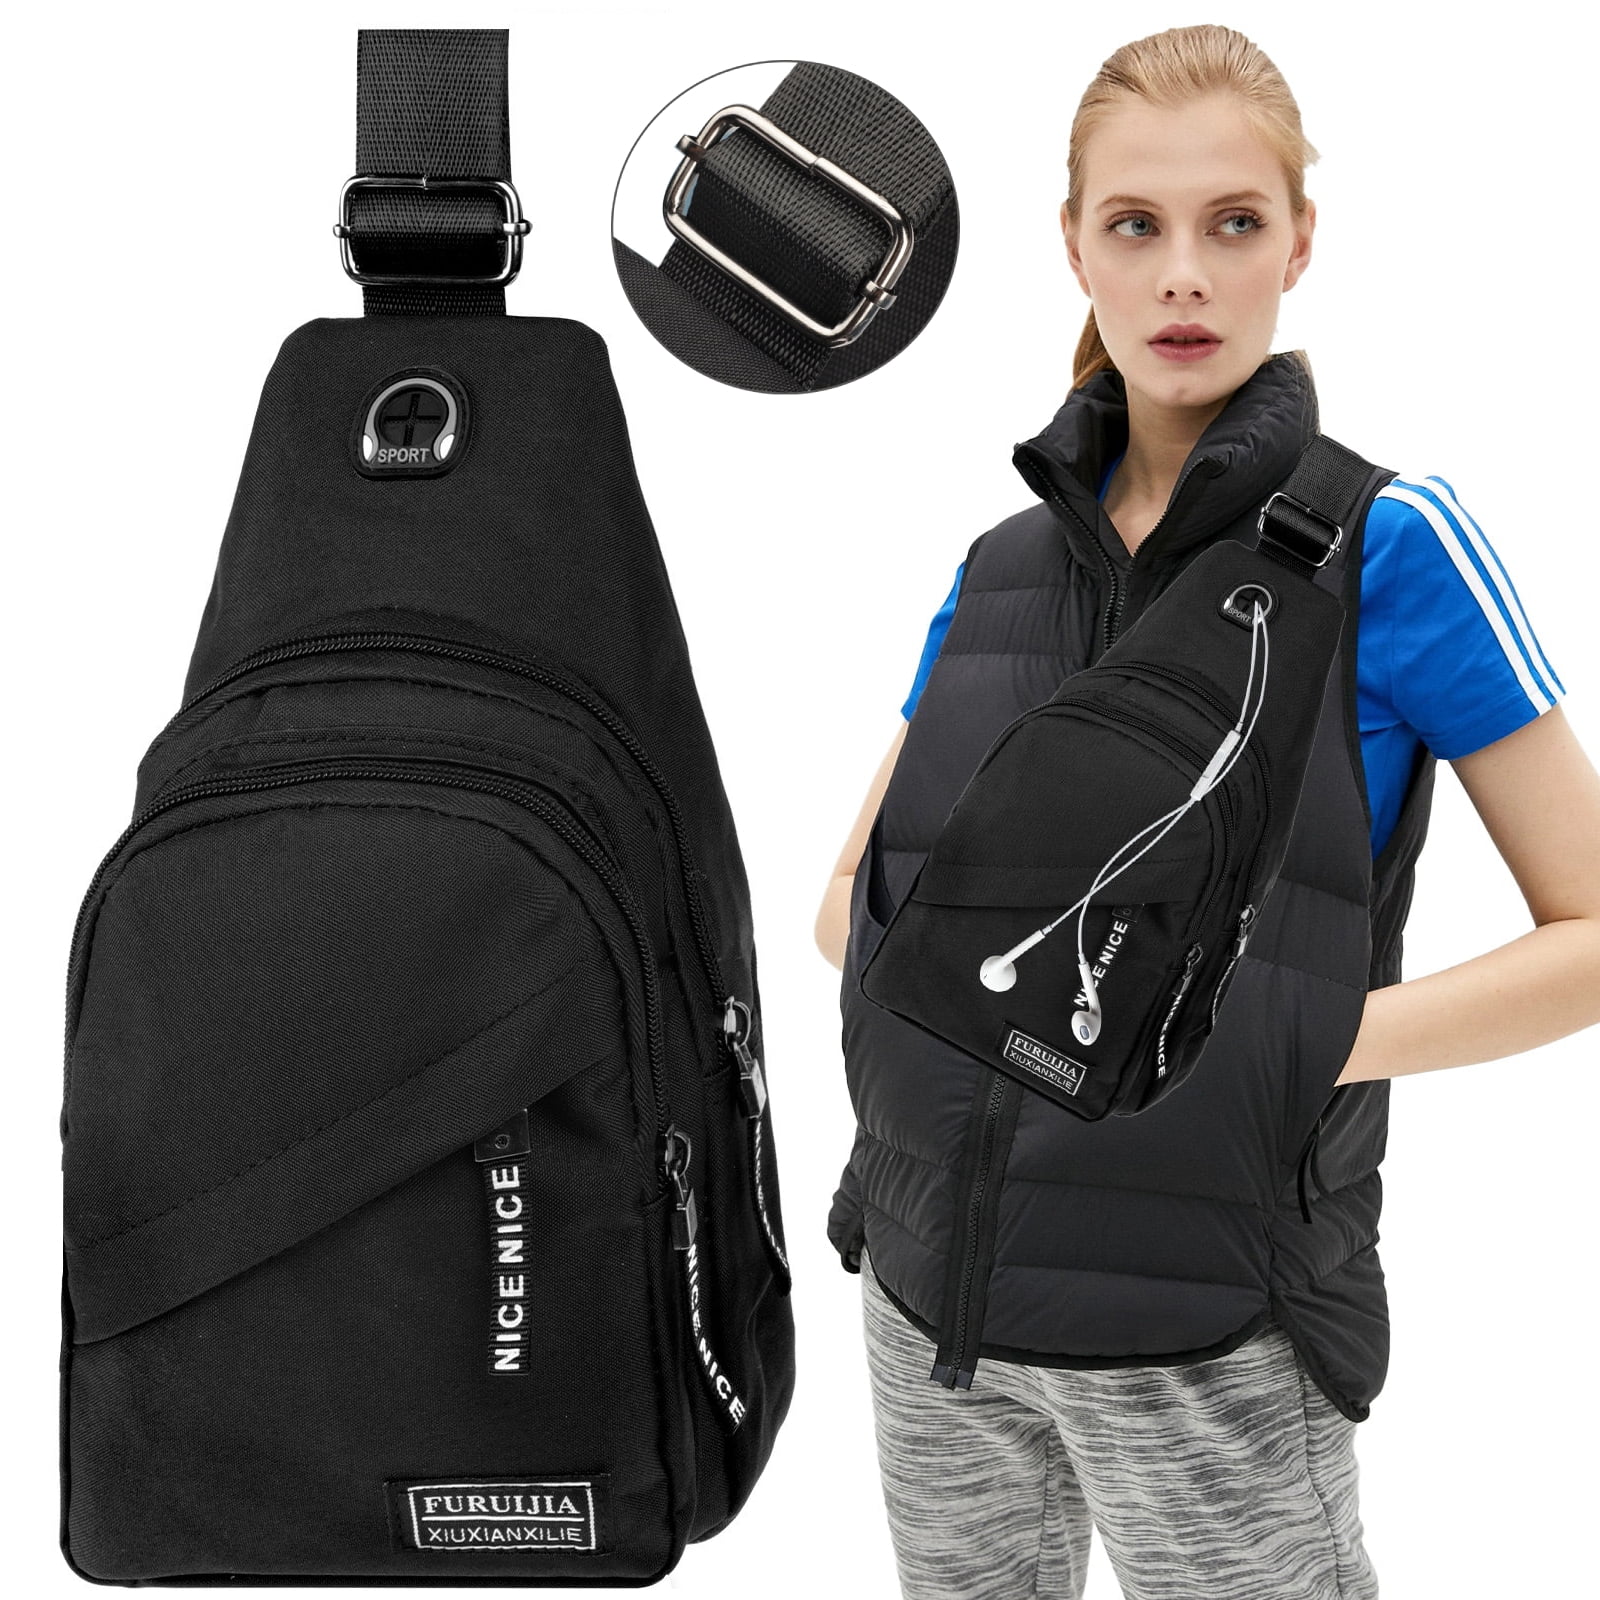 Mens Leather Sling Bag Crossbody Chest Bag Shoulder Bag Backpack Hiking  Travel